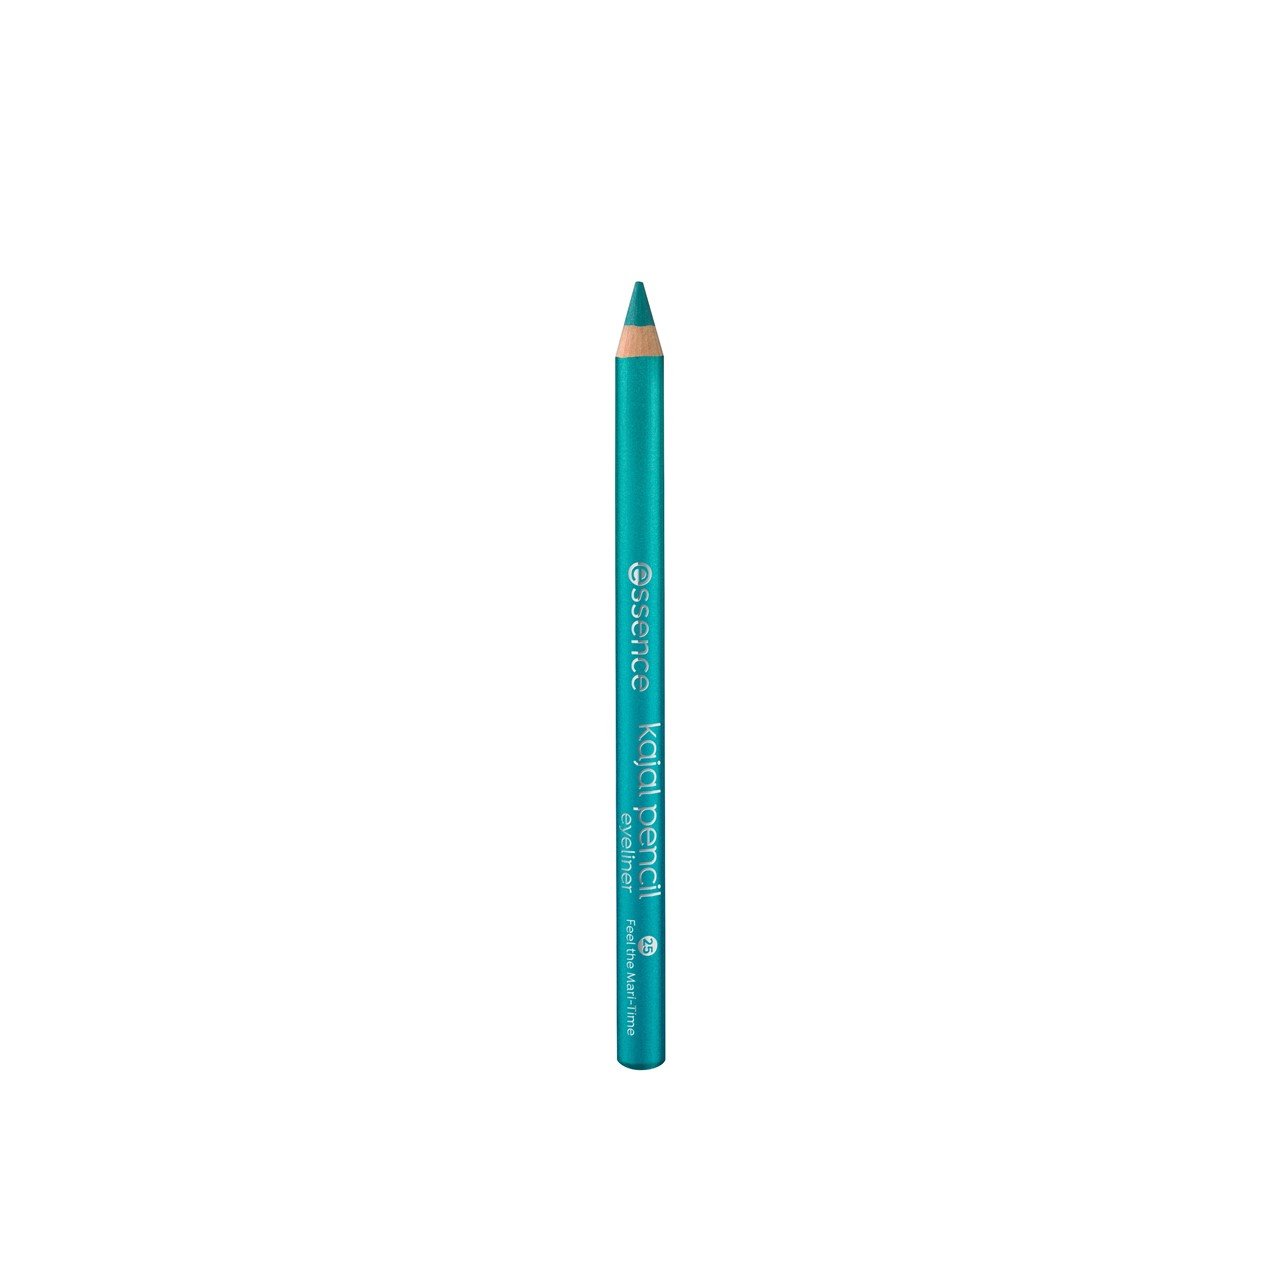 Карандаш каял. Севентин карандаш для глаз 10. Каял от Essence белый. Seventeen Eye Liner Pencil. Av карандаш для глаз Eye Liner 21 зеленый.